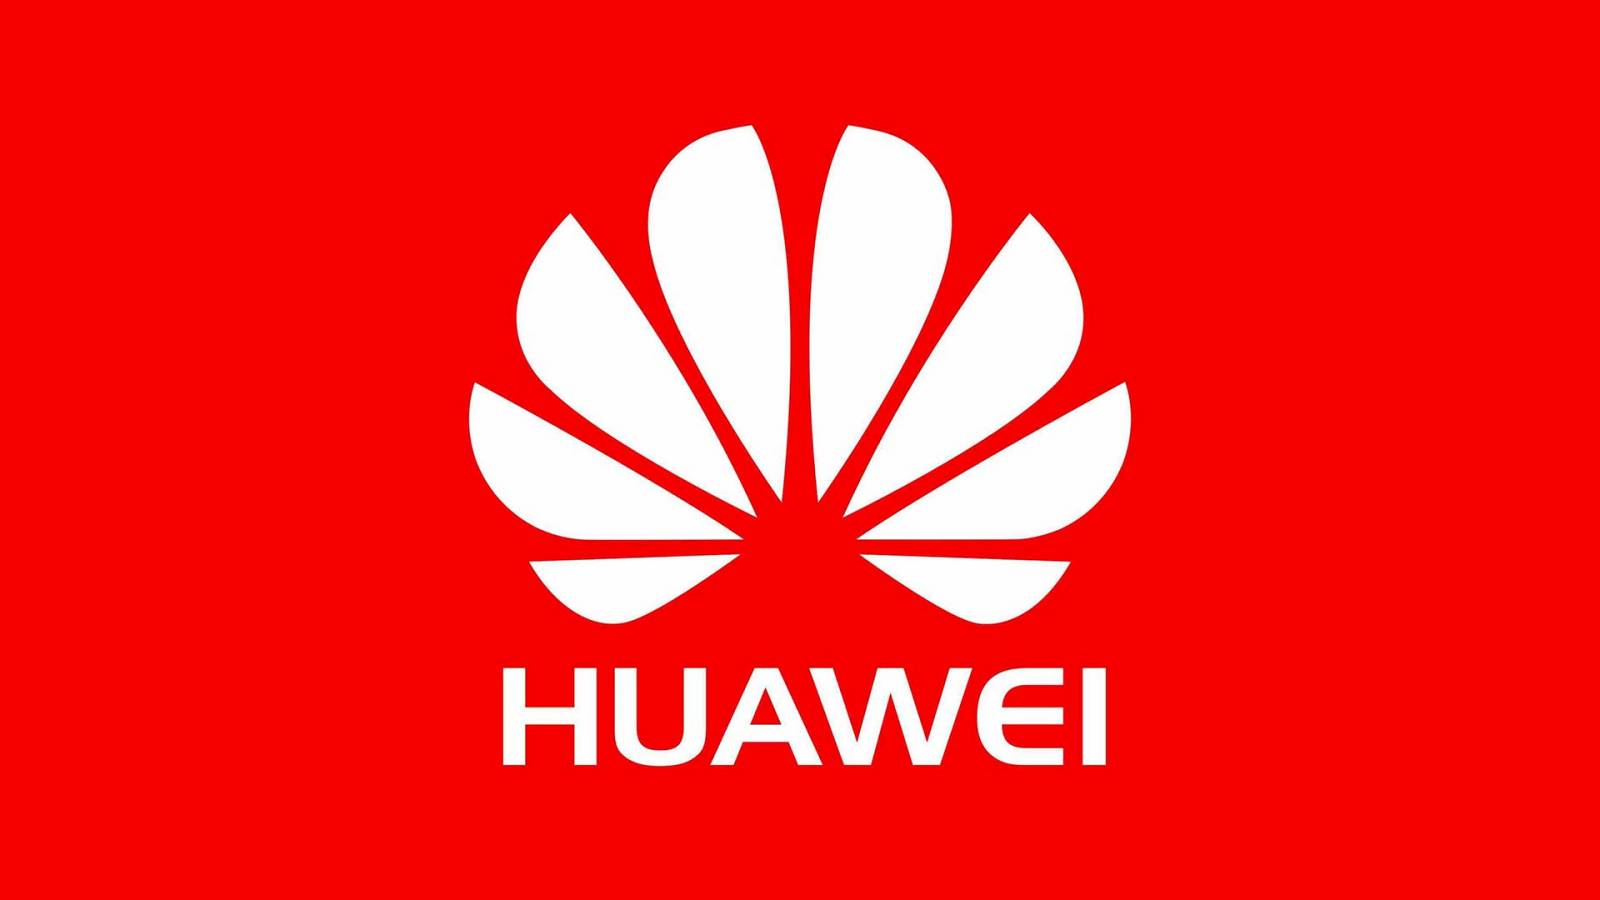 Huawei bringt sich auf dumme und völlig nutzlose Weise in Verlegenheit